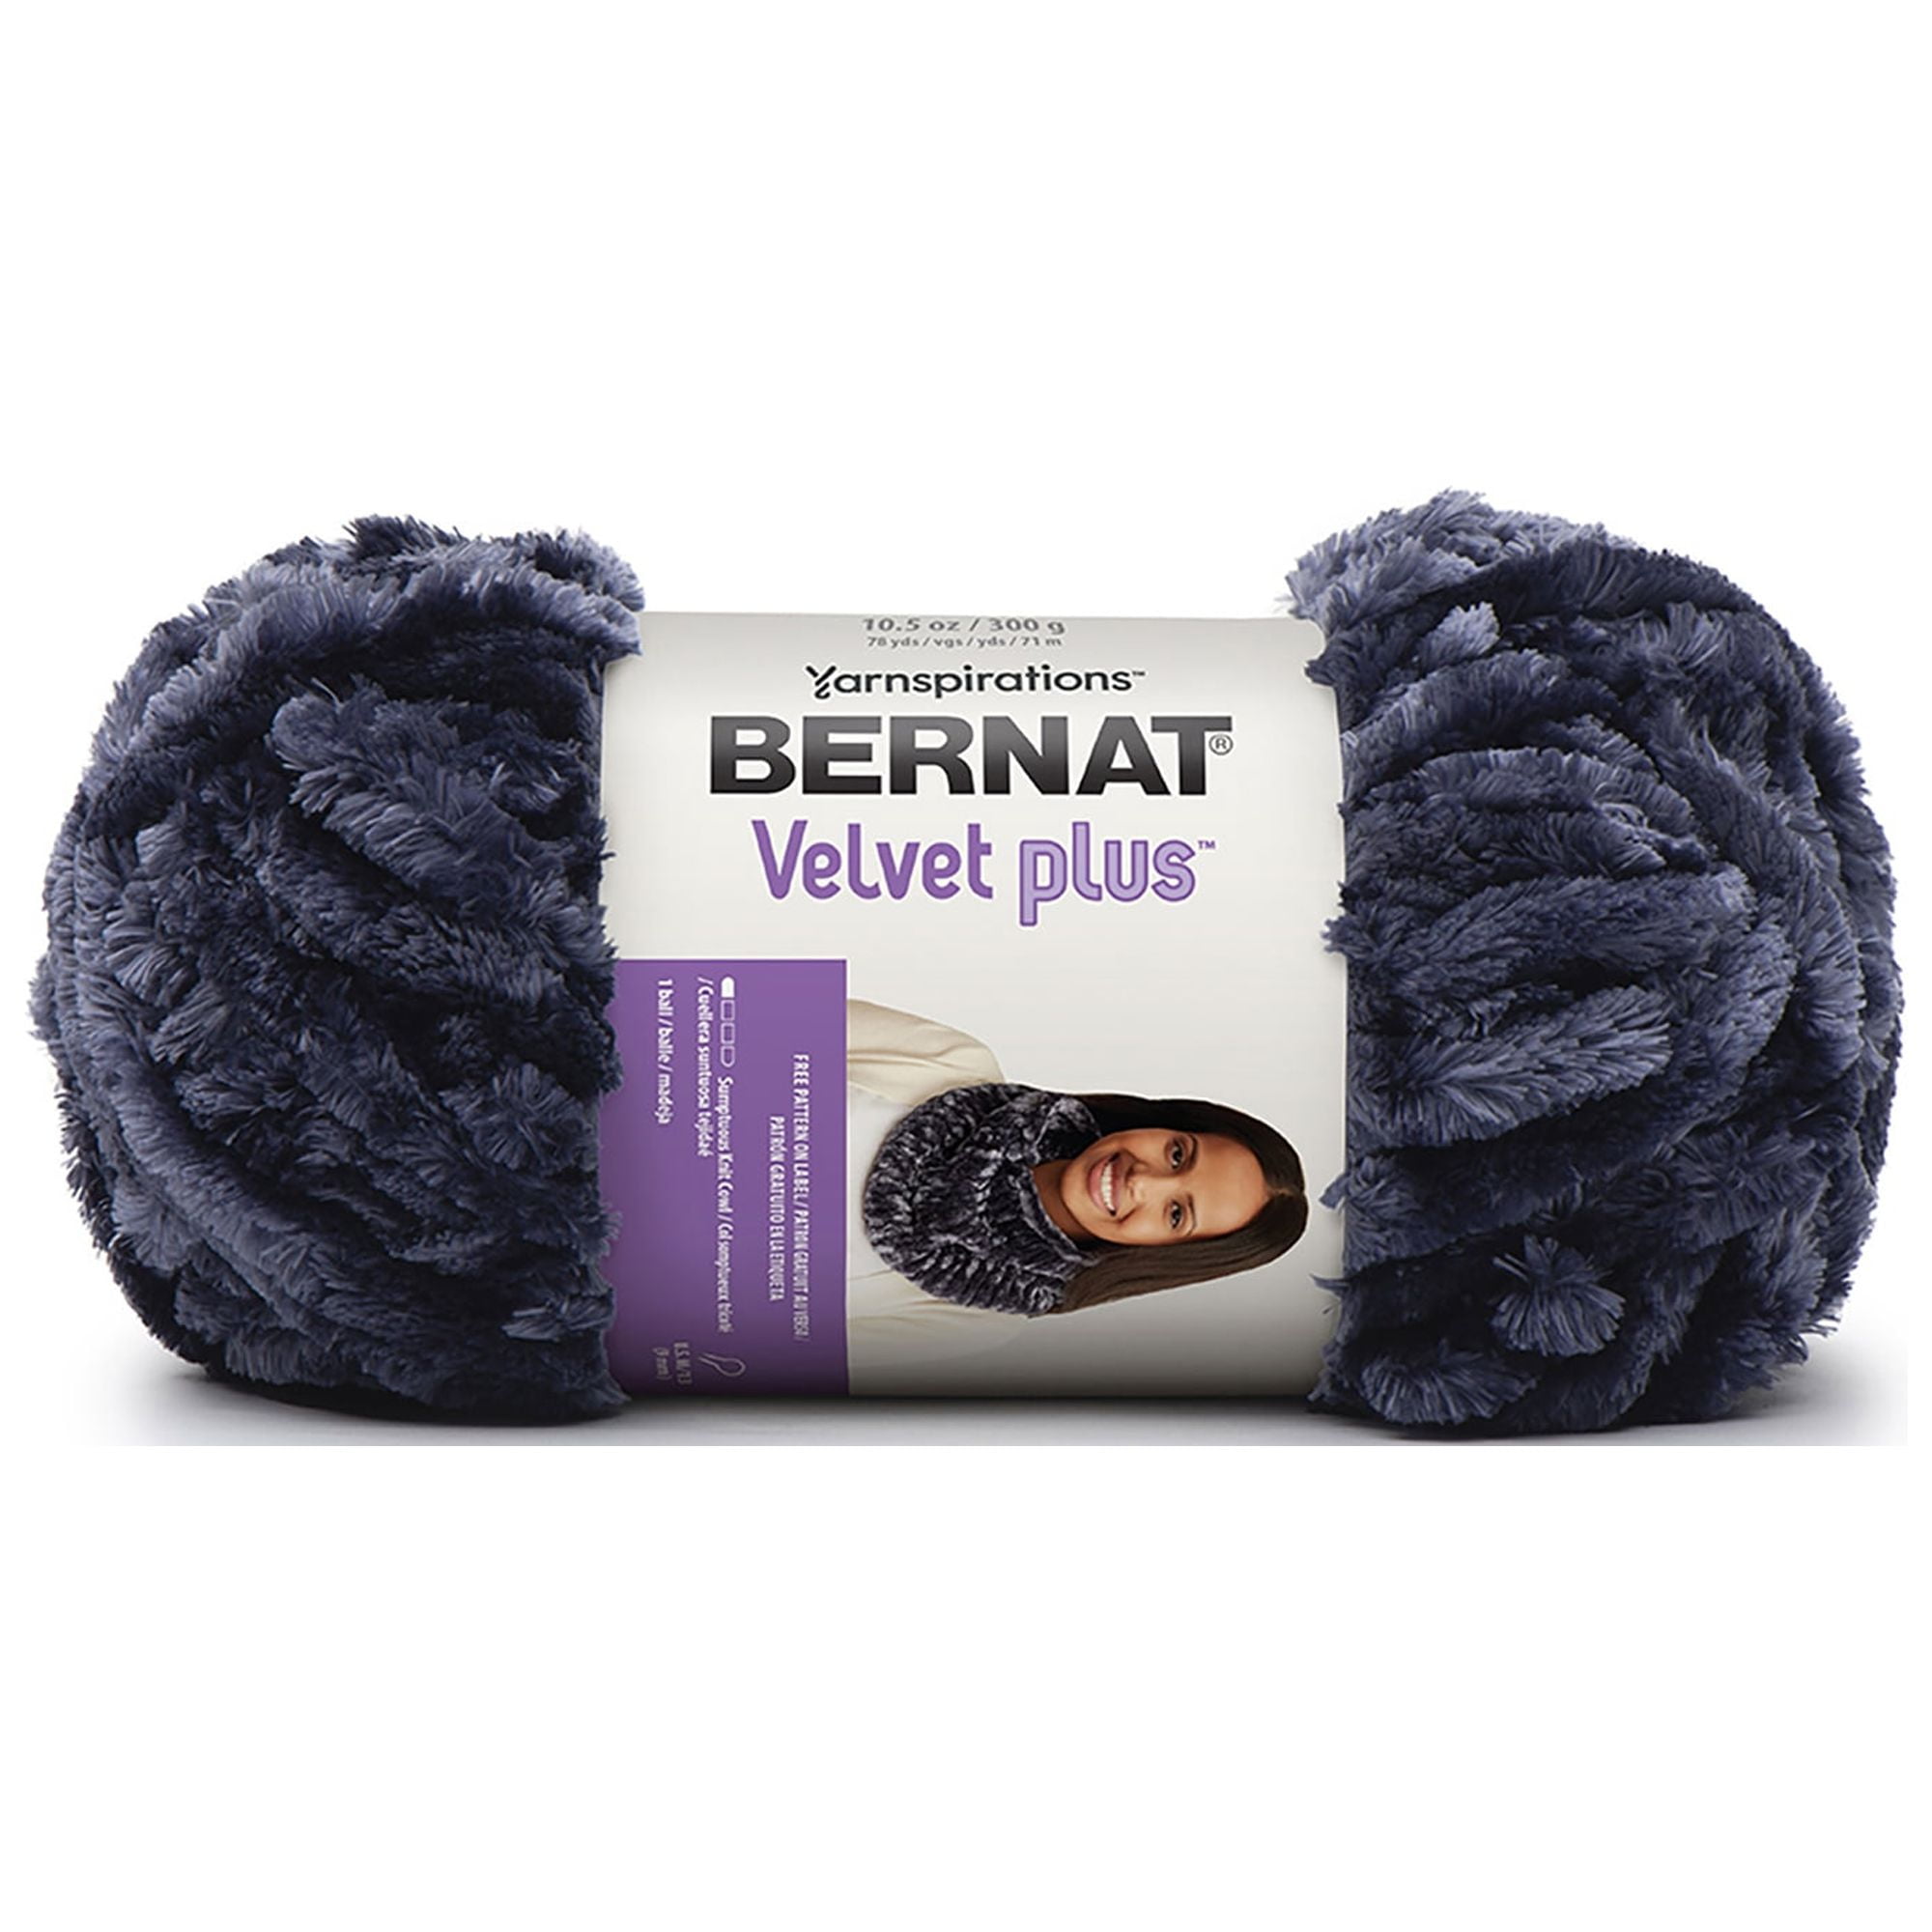 Velvet Yarn, Yarnspirations' BERNAT Velvet Review